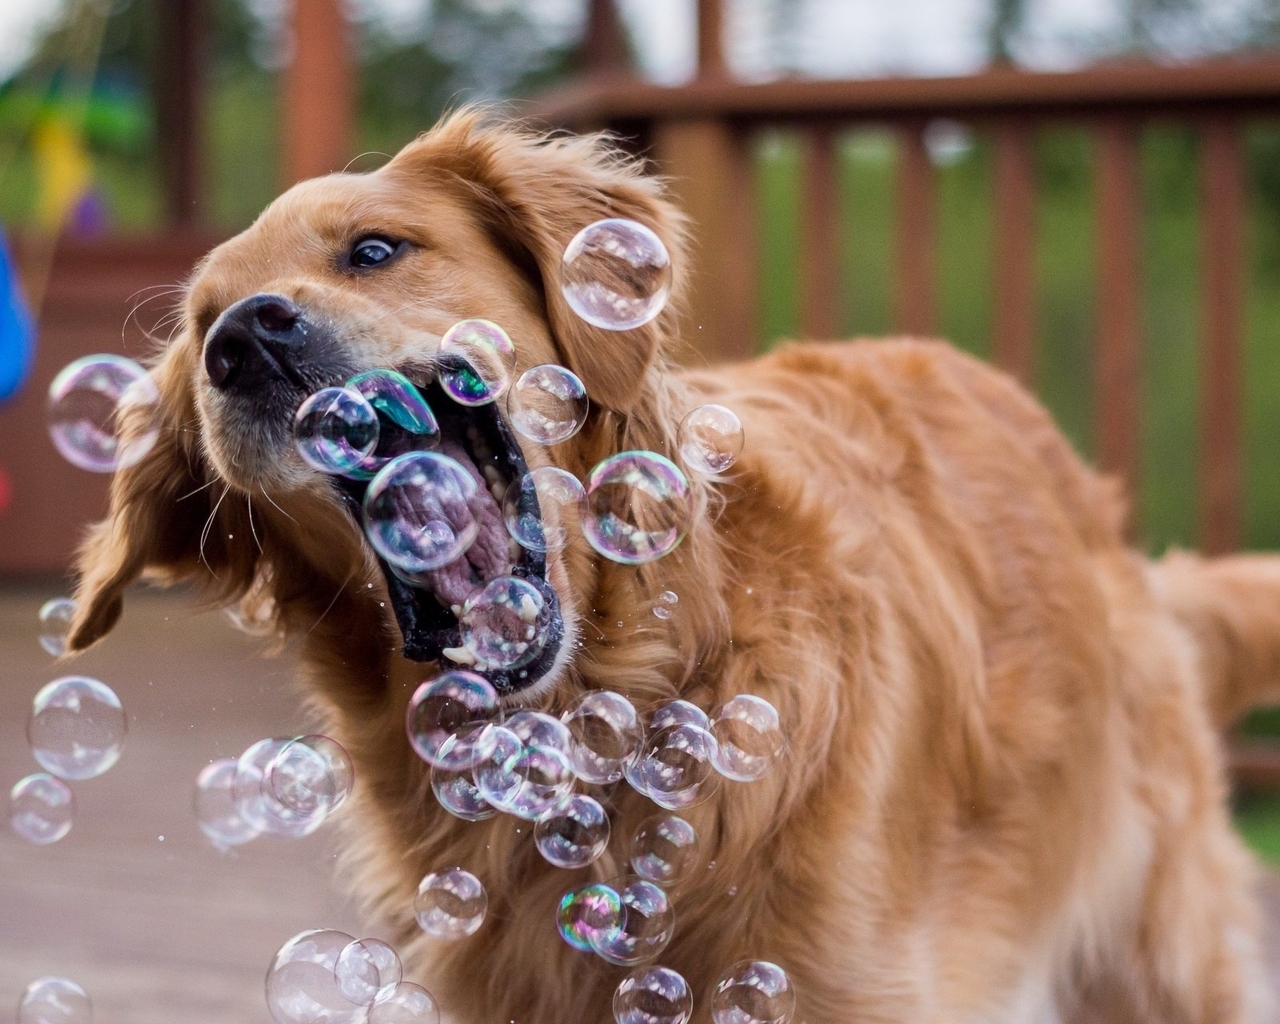 Image: Dog, golden, retriever, soap, bubbles, catches, plays